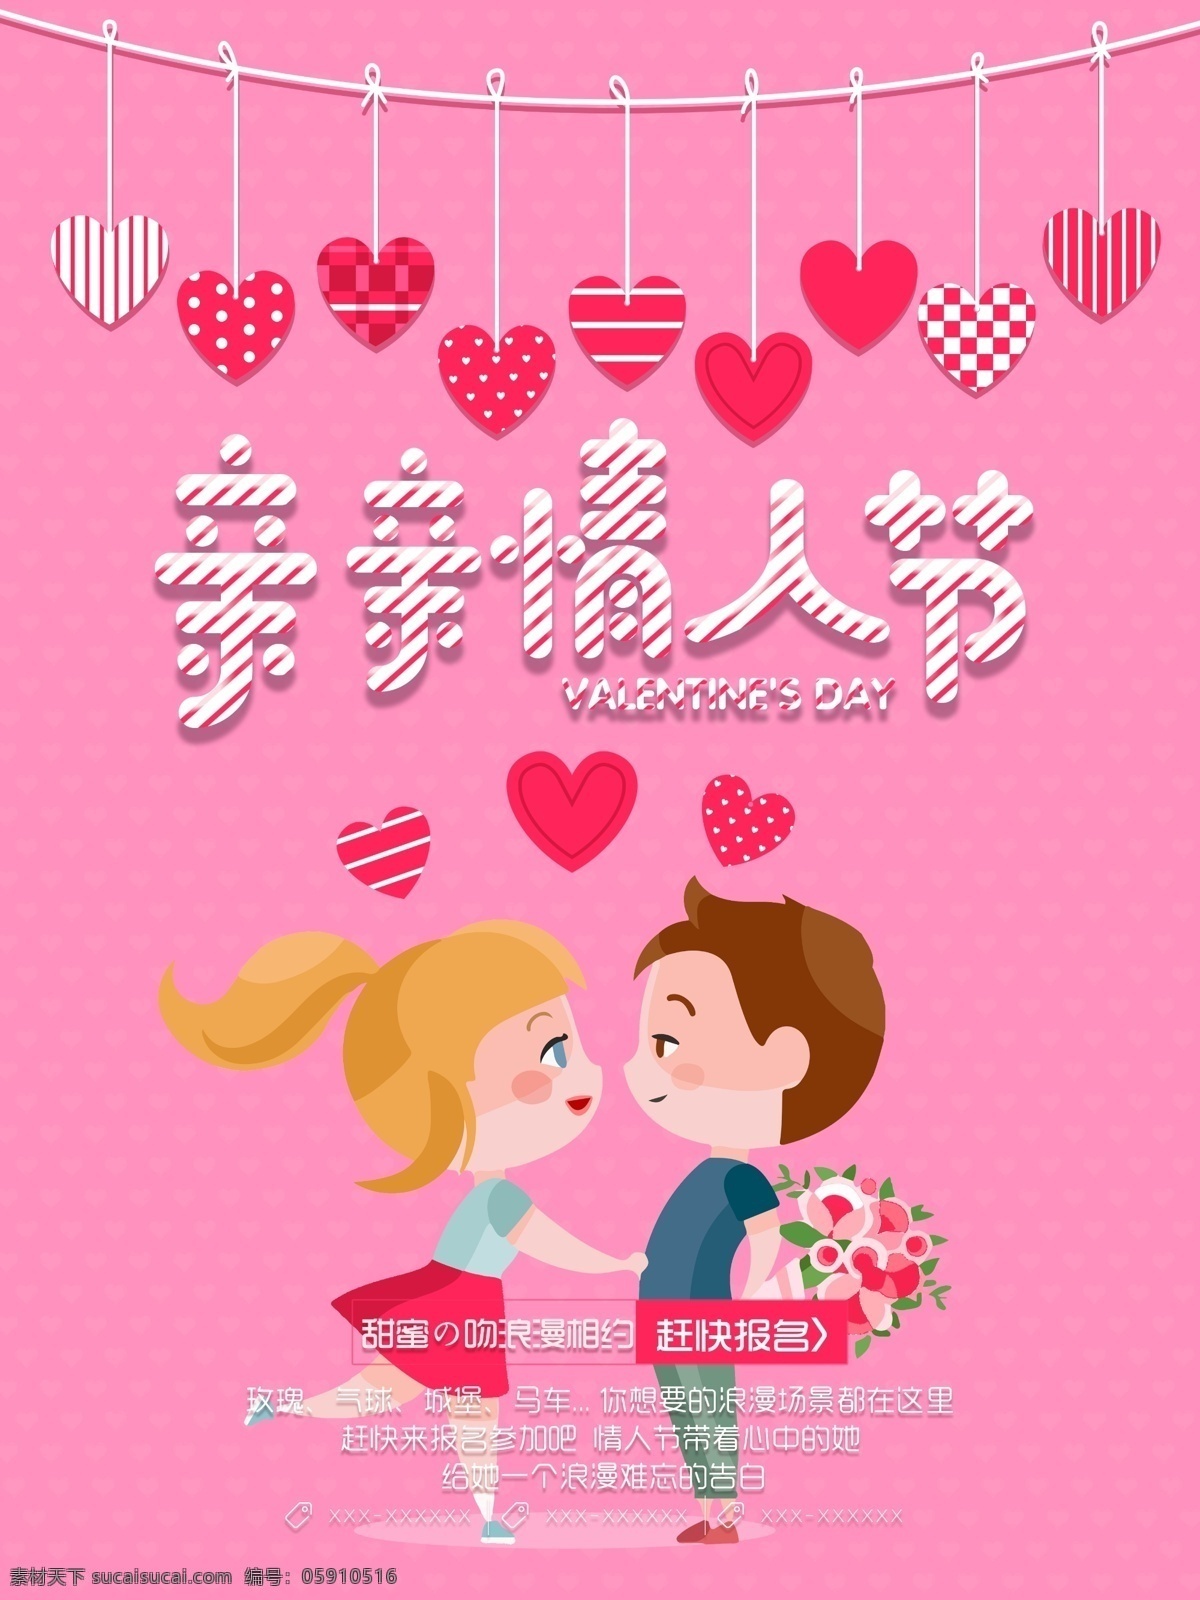 甜蜜 浪漫 亲亲 情人节 海报 亲亲情人节 kiss 亲吻 214 520 情人节海报 插画 商场 商业街 活动 促销